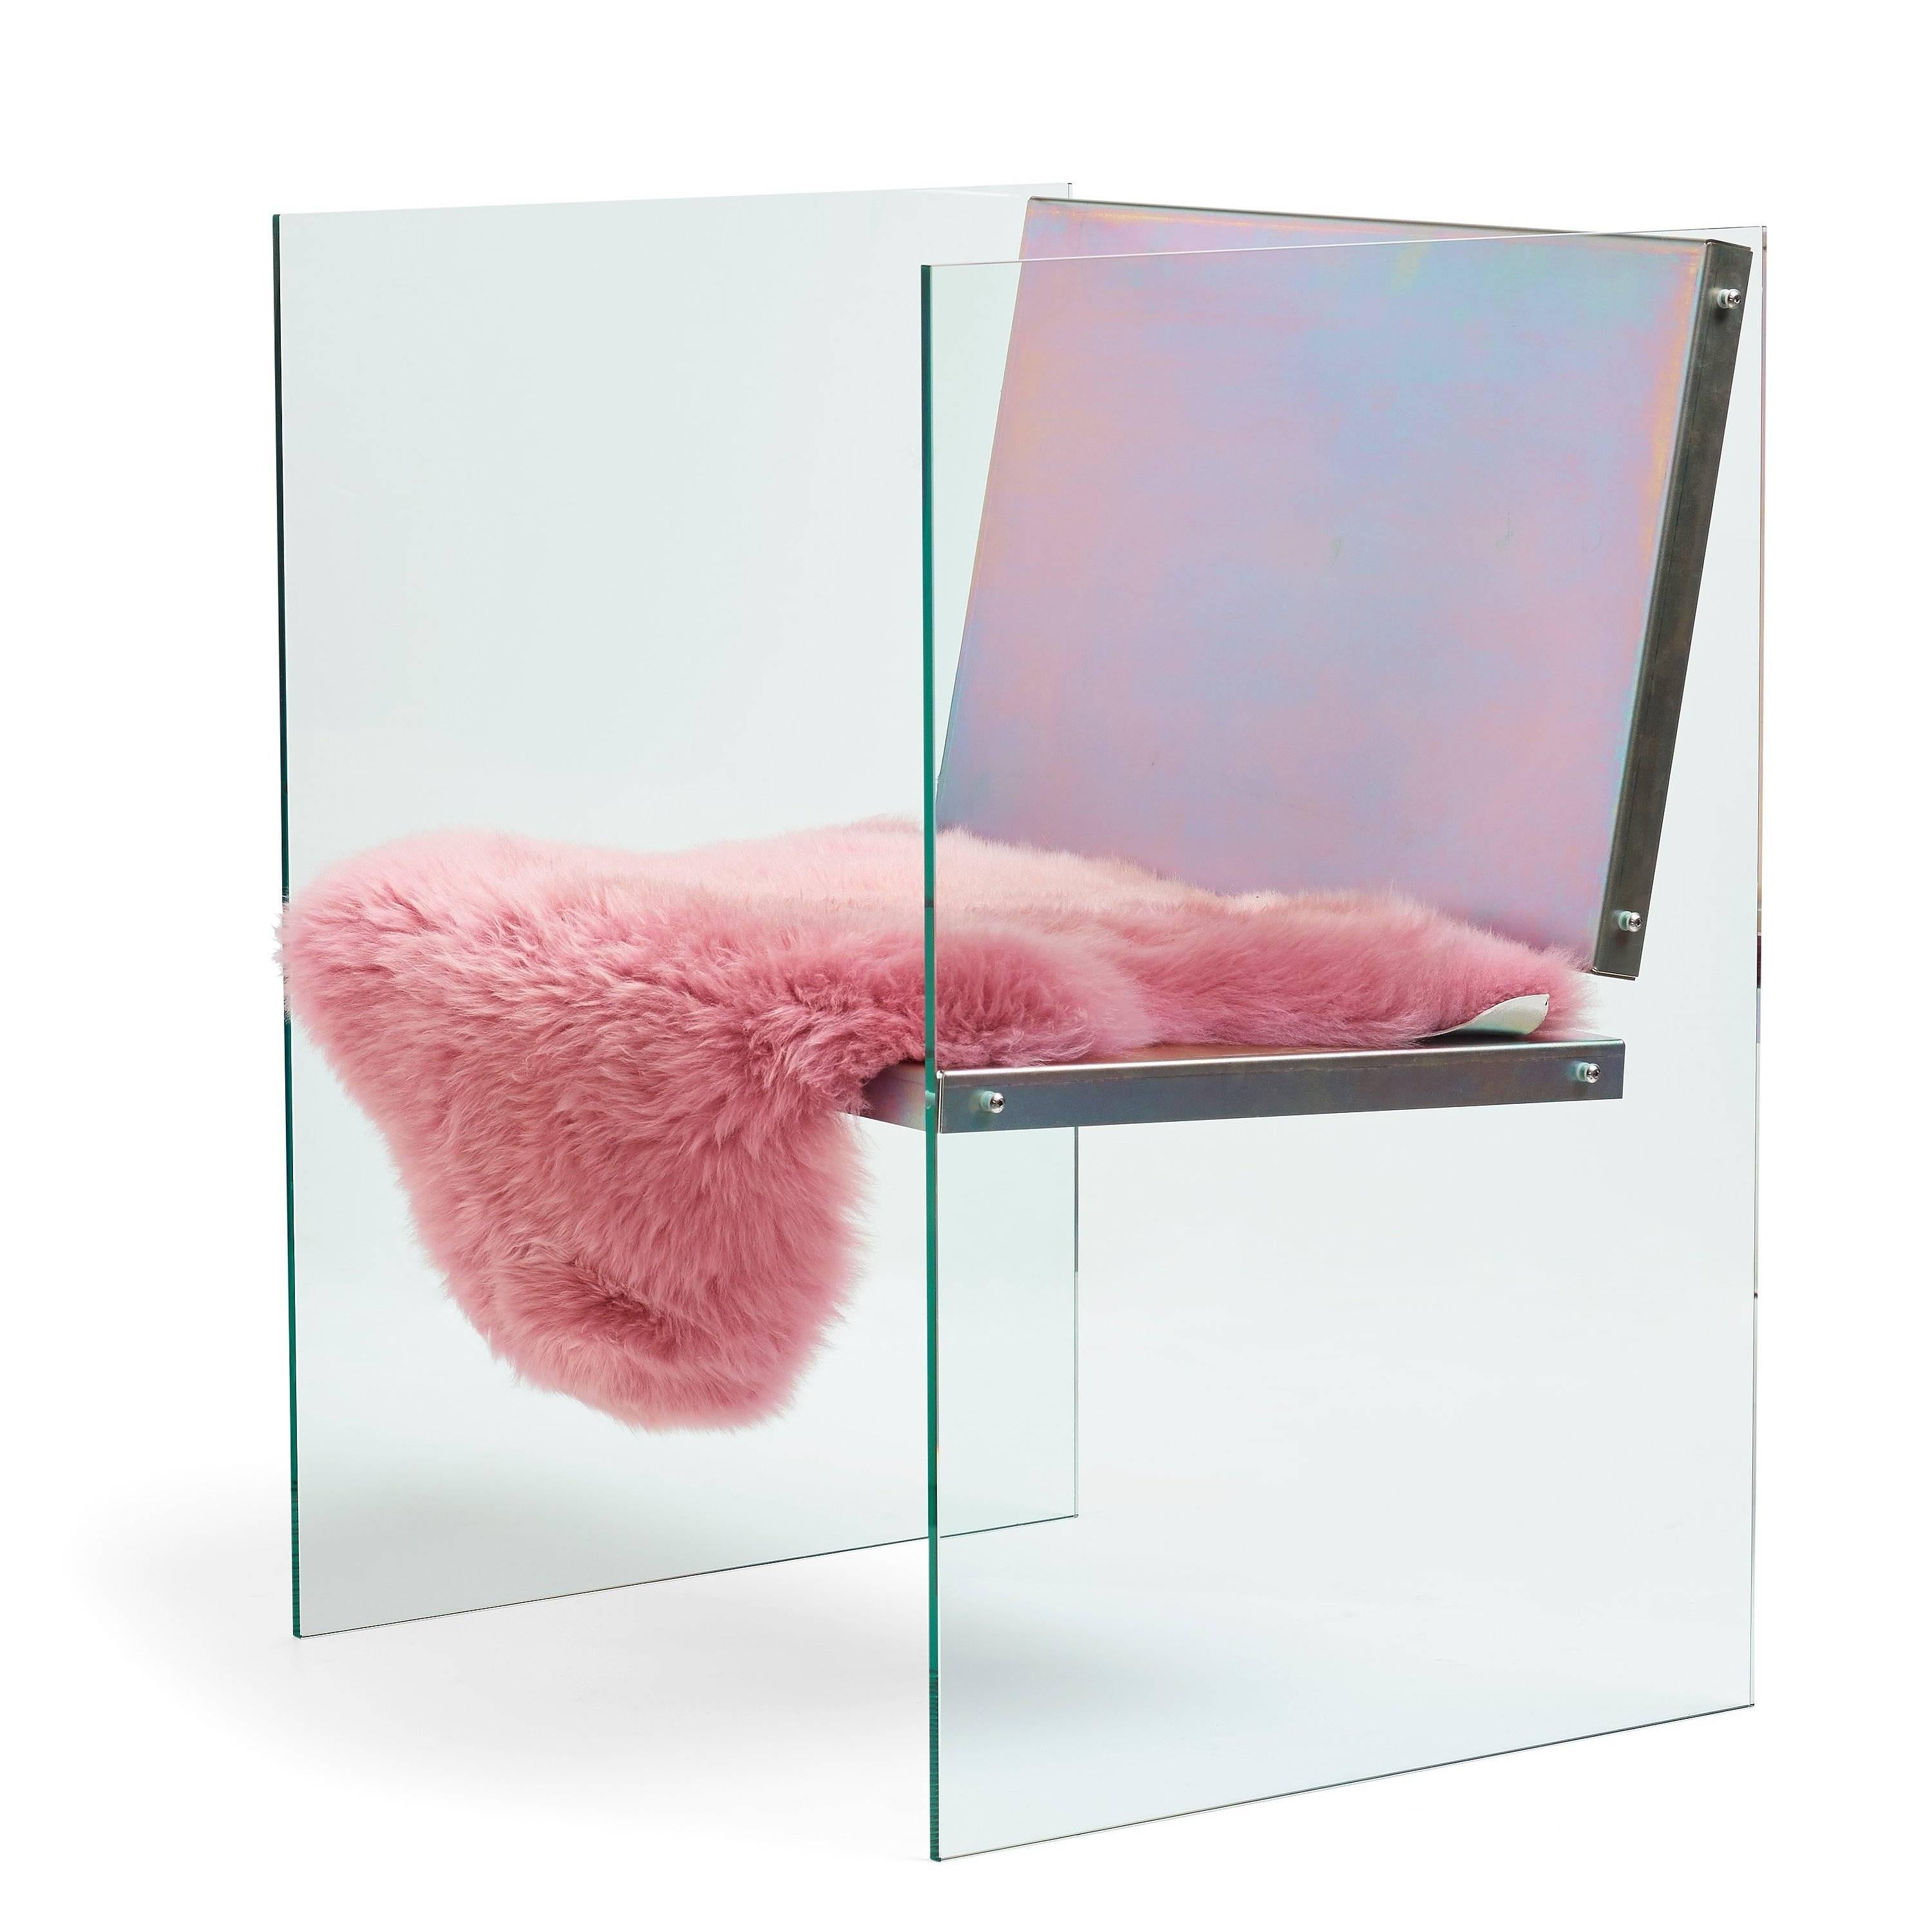 La chaise en verre et acier est réalisée en verre trempé, acier passivé et peau de mouton.

Le travail de Fredrik Paulsen s'étend du mobilier au design d'intérieur et d'exposition. Il s'intéresse à la création d'un sentiment d'appartenance à une